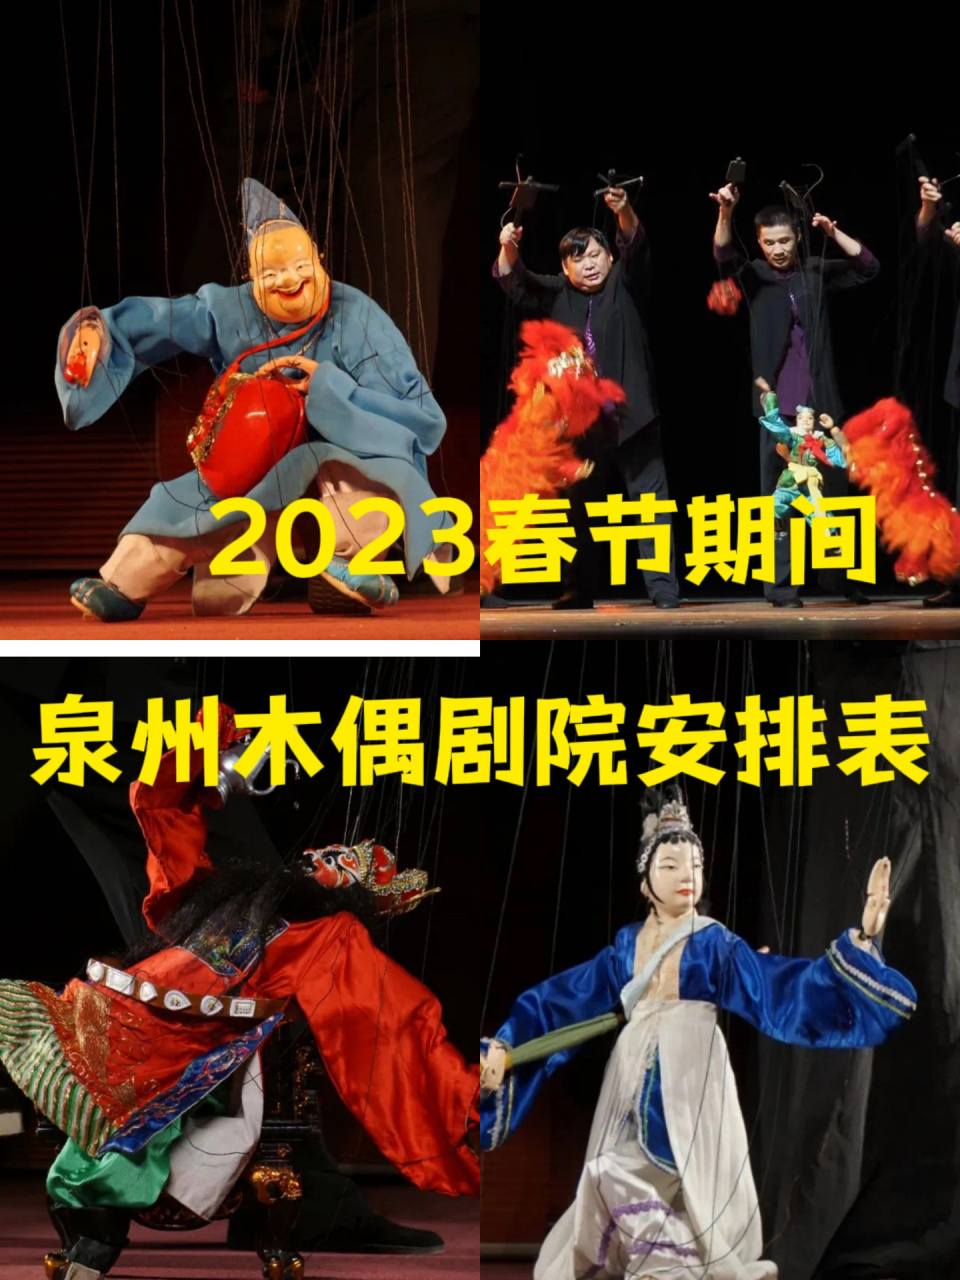 泉州木偶戏终于可以线上购票了05 2023年泉州木偶剧院演出时间